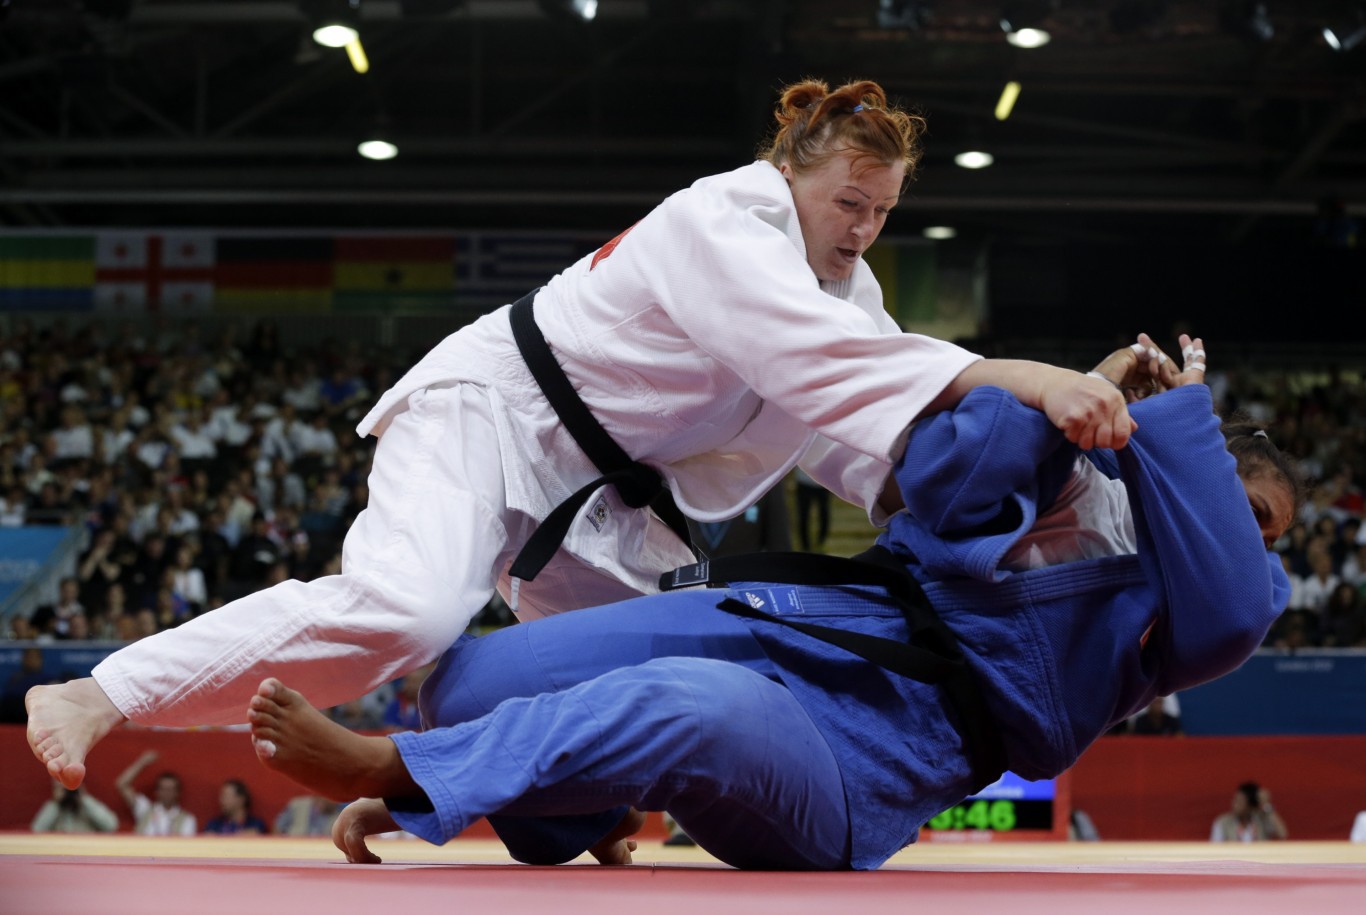 Sẽ không có võ sĩ judo nào bị loại, theo lời của chủ tịch Liên đoàn Judo quốc tế, Marius Vizer.